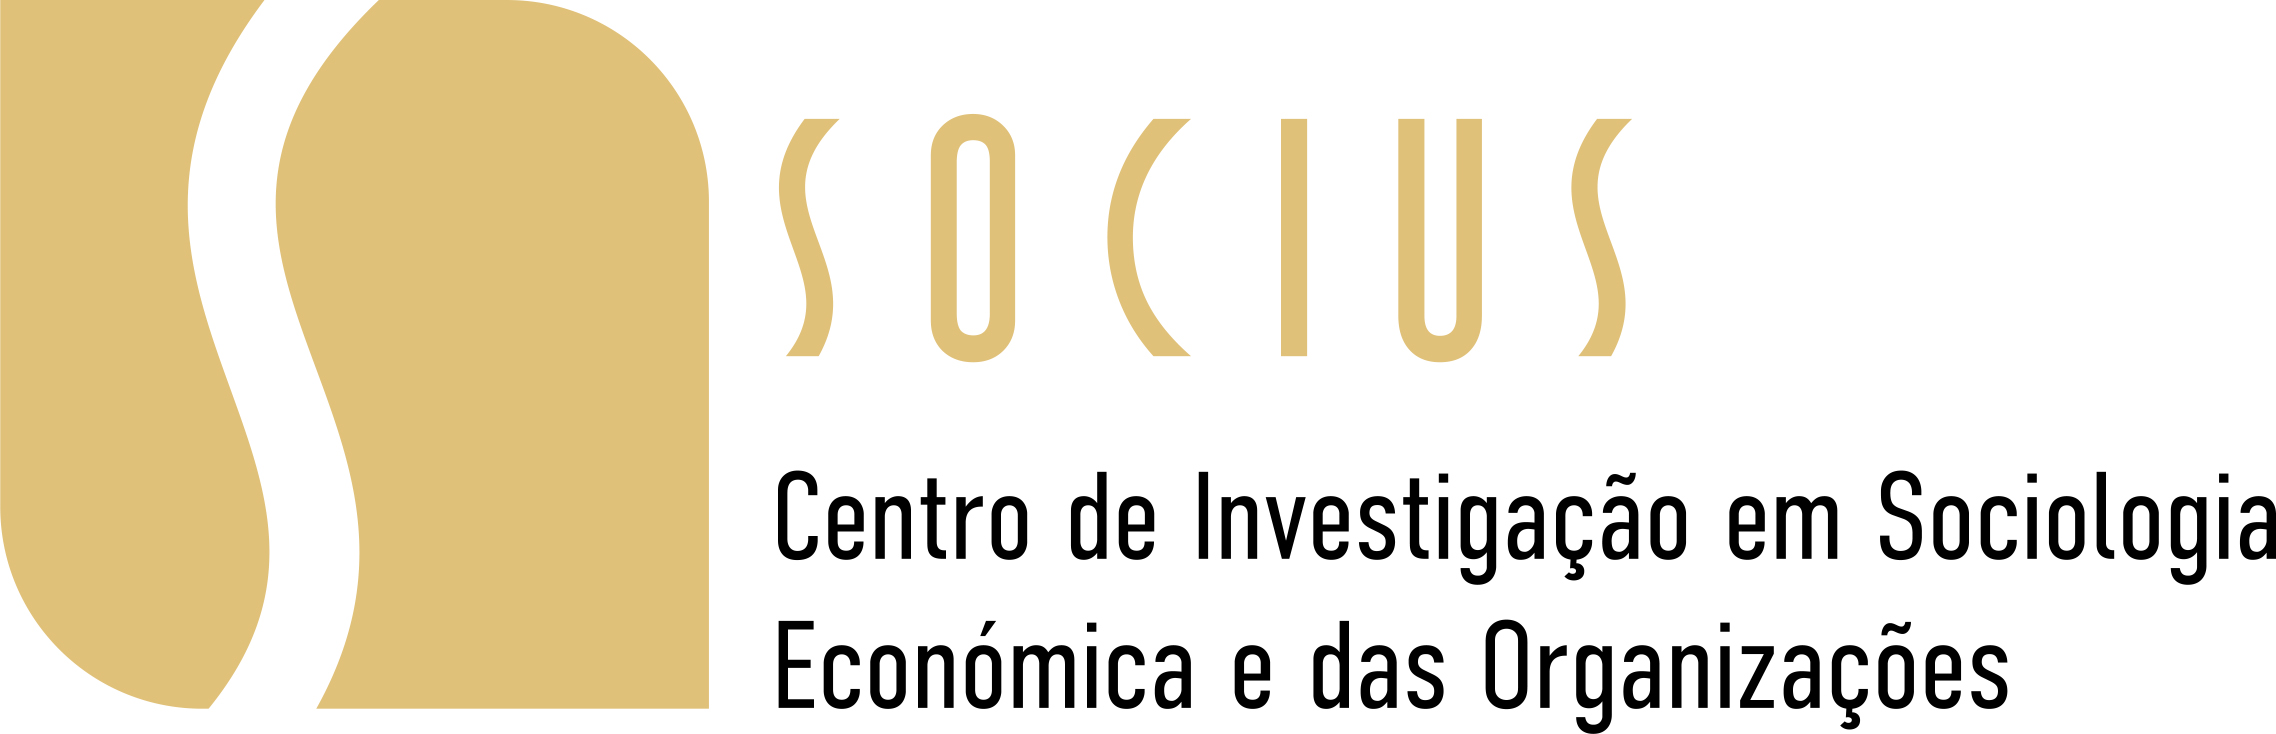 logo_SOCIUS